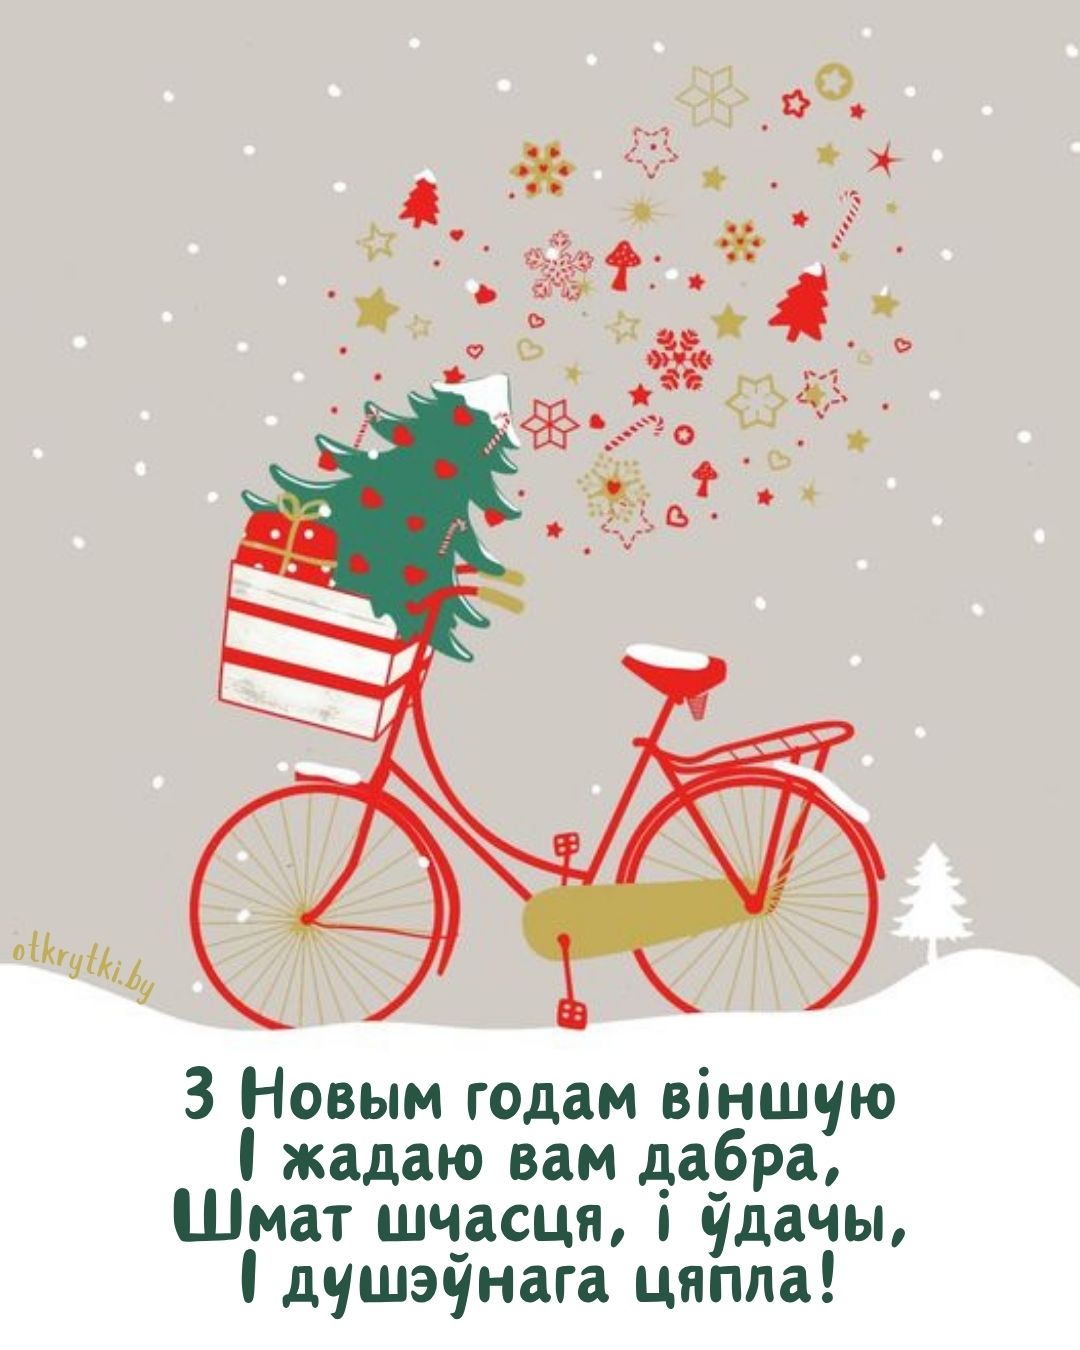 Оригинальная открытка с Новым годом на белорусском языке